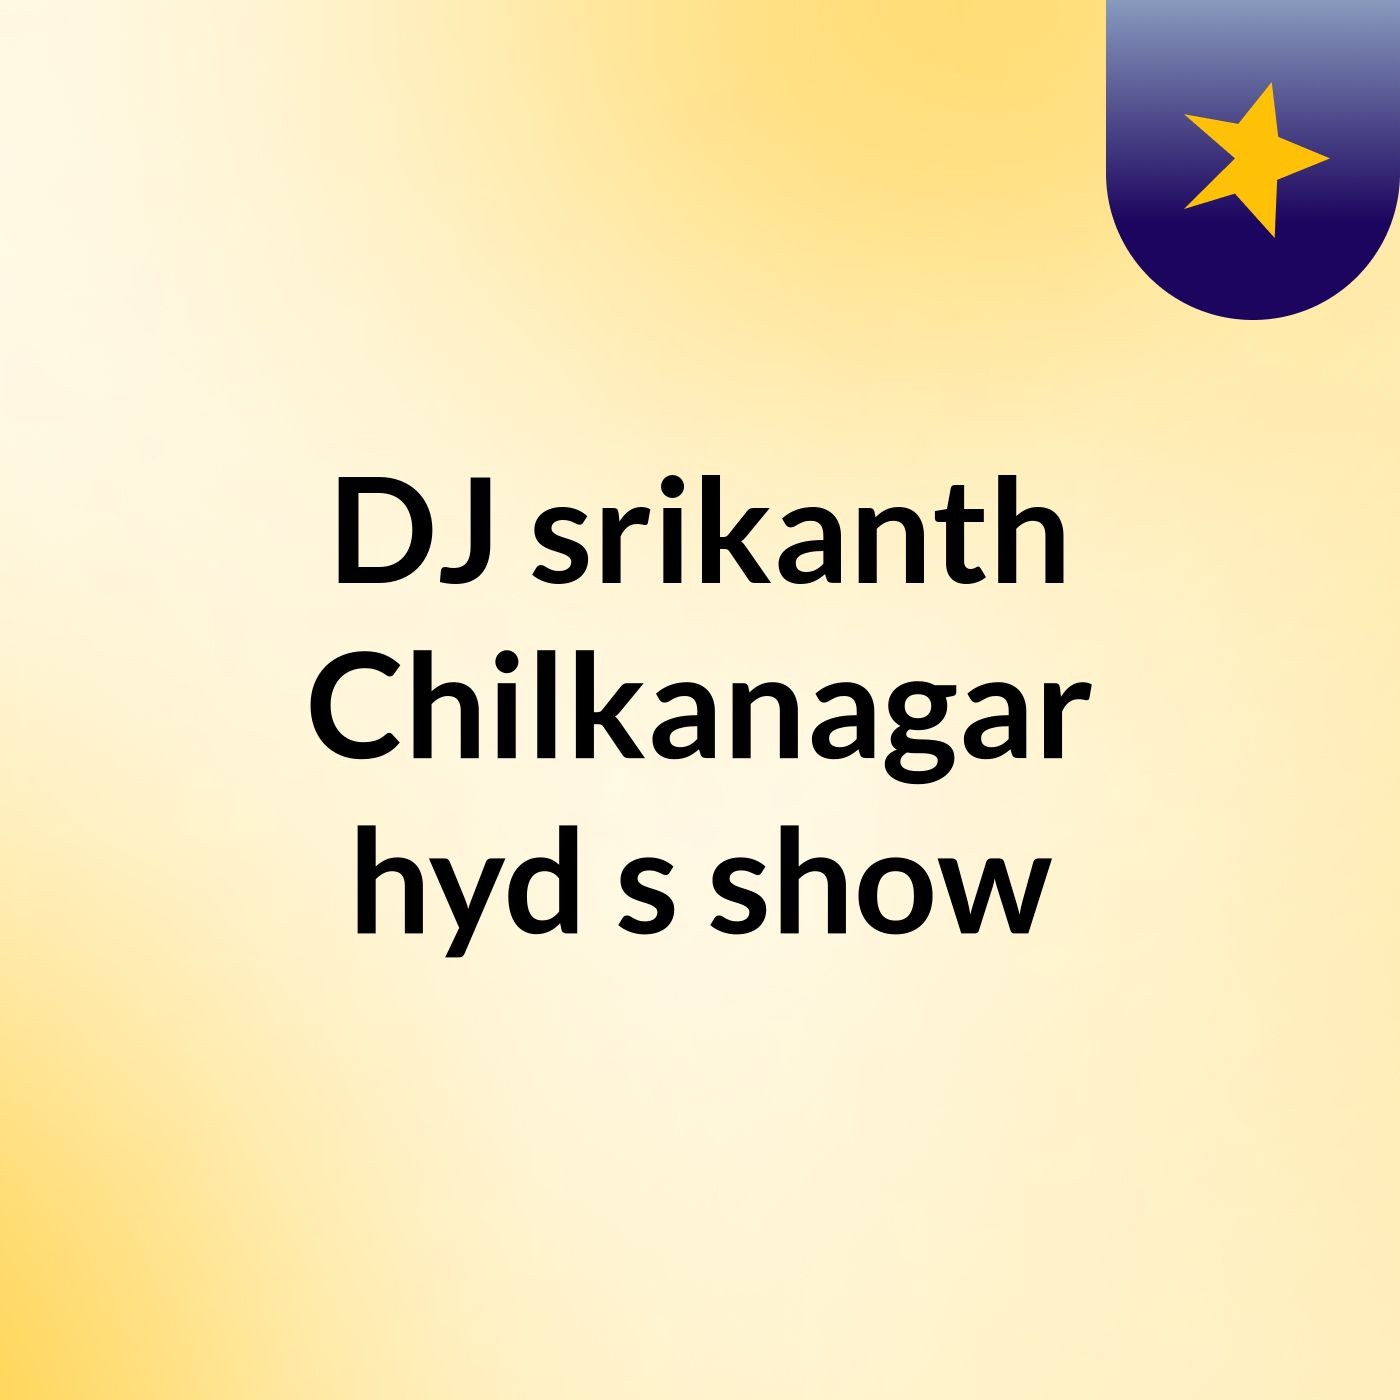 Episode 3 - DJ srikanth Chilkanagar hyd's show